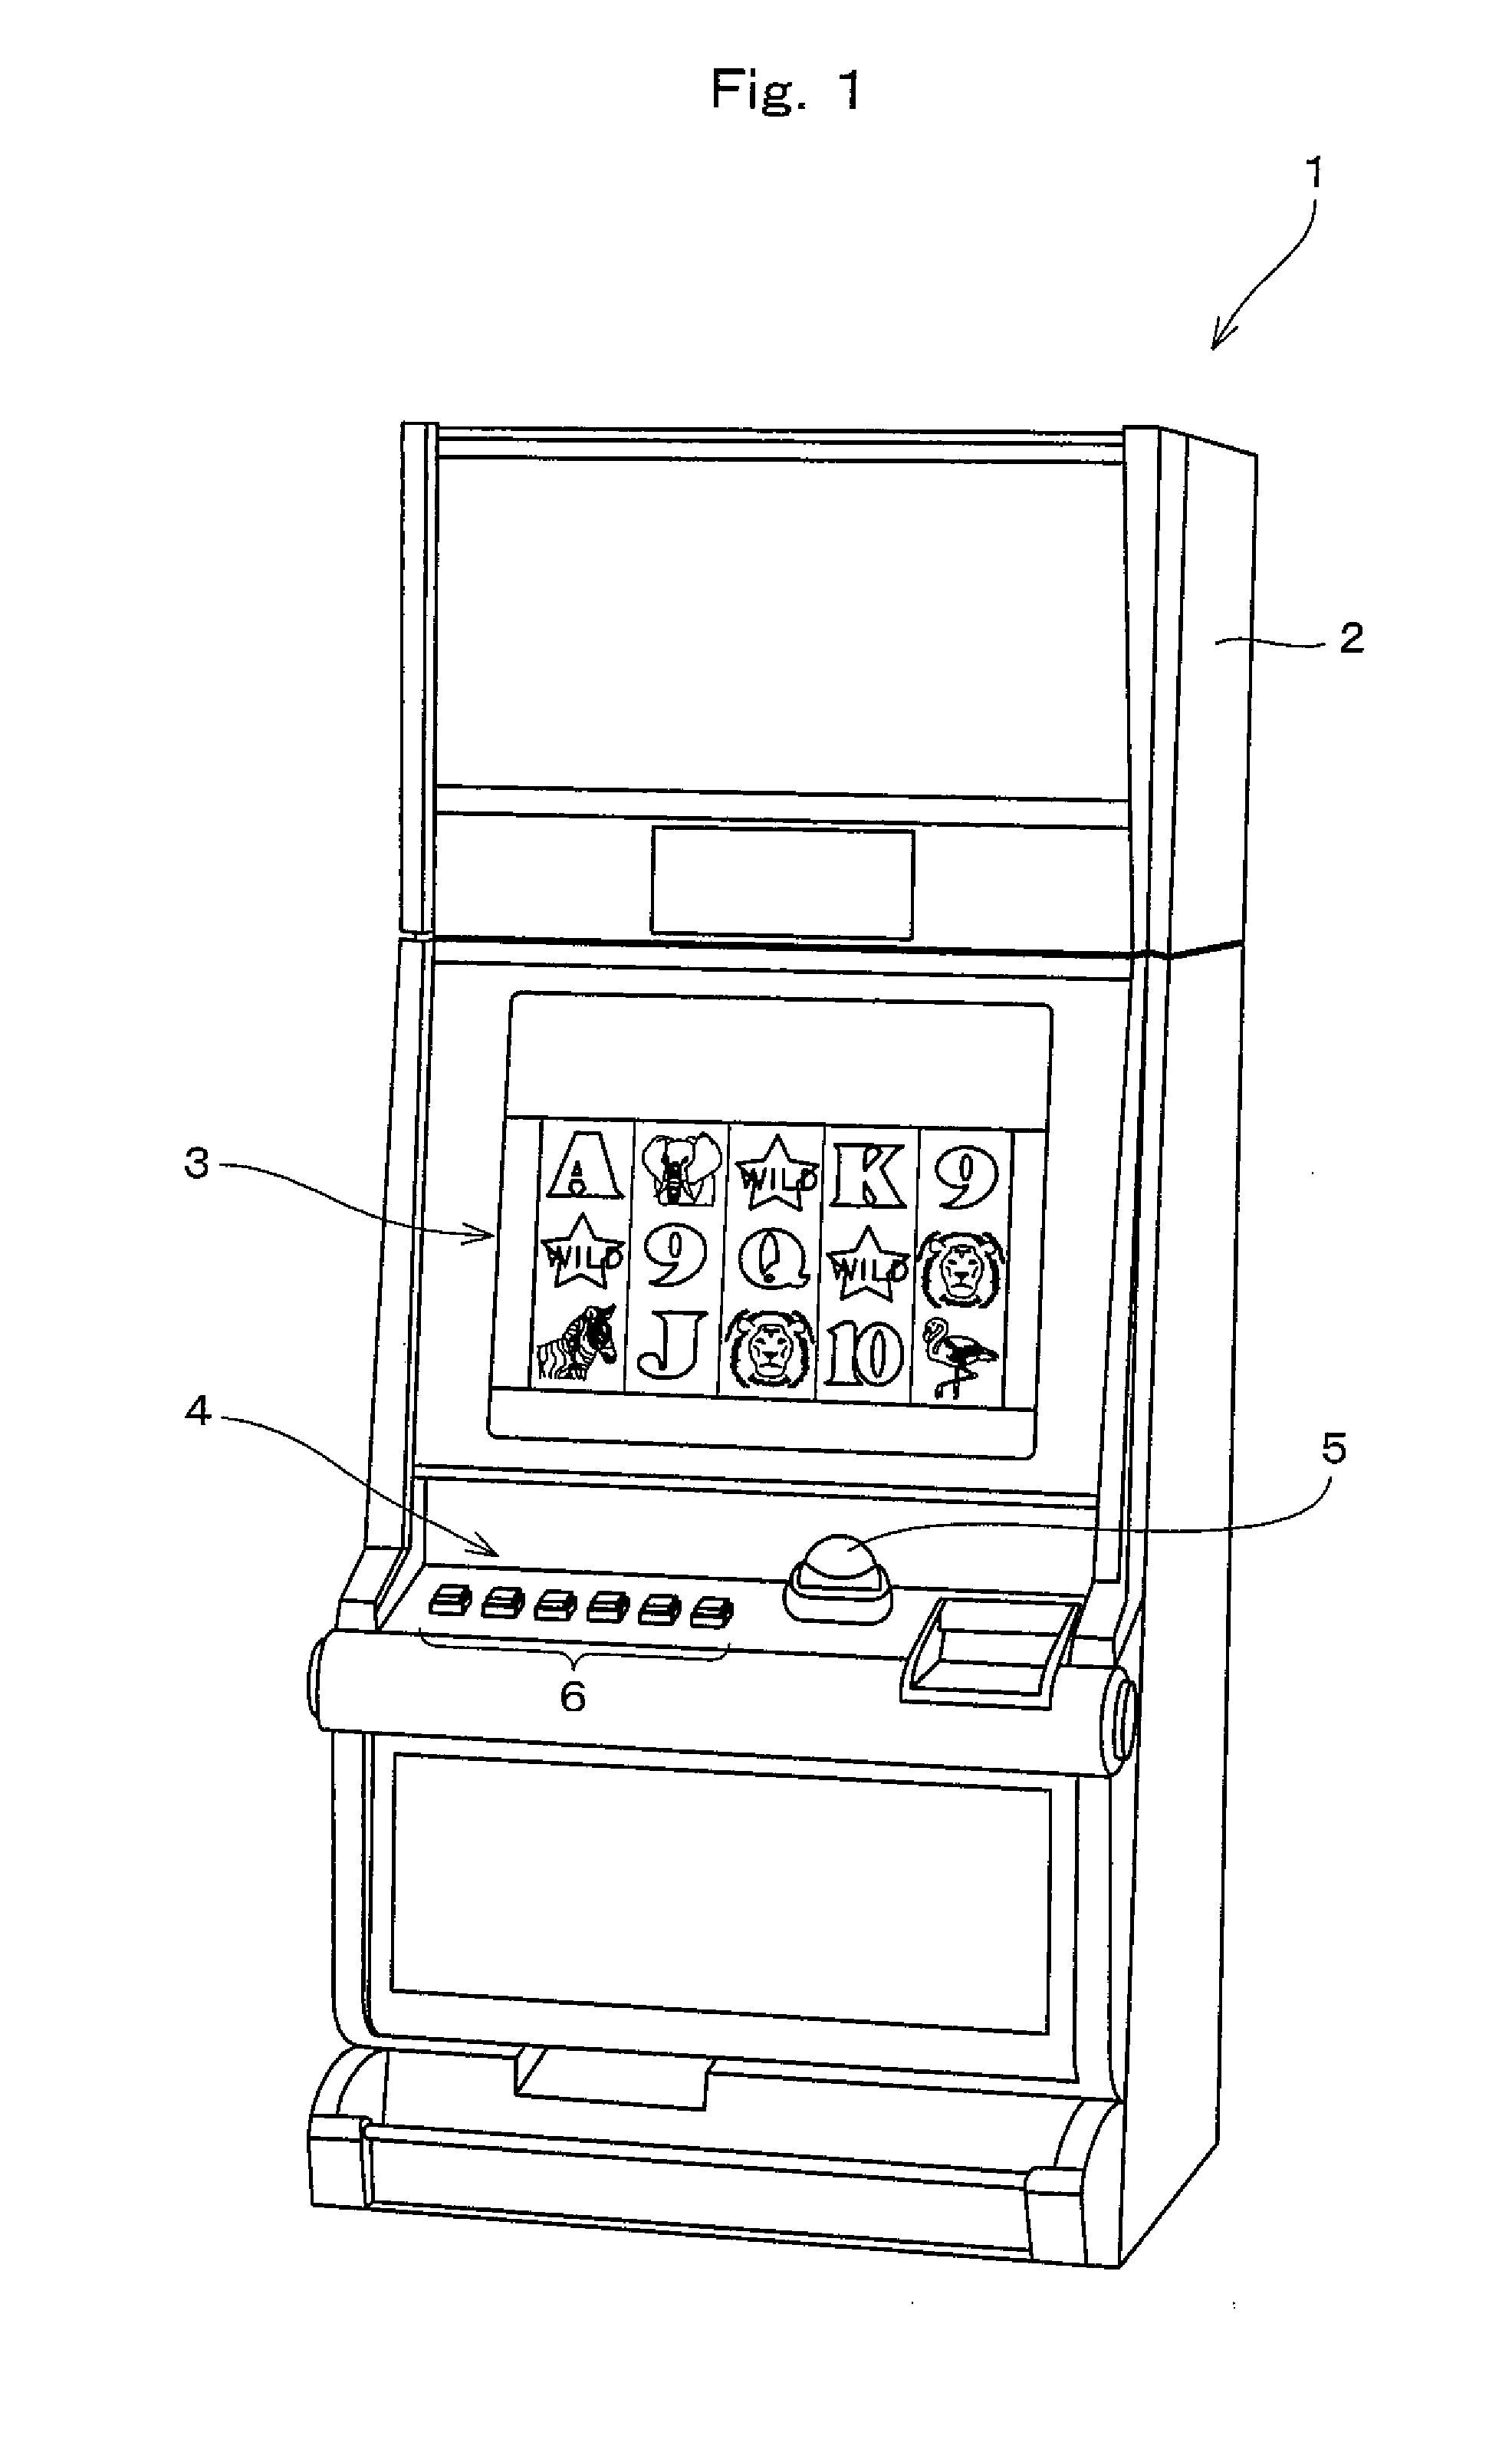 Gaming machine